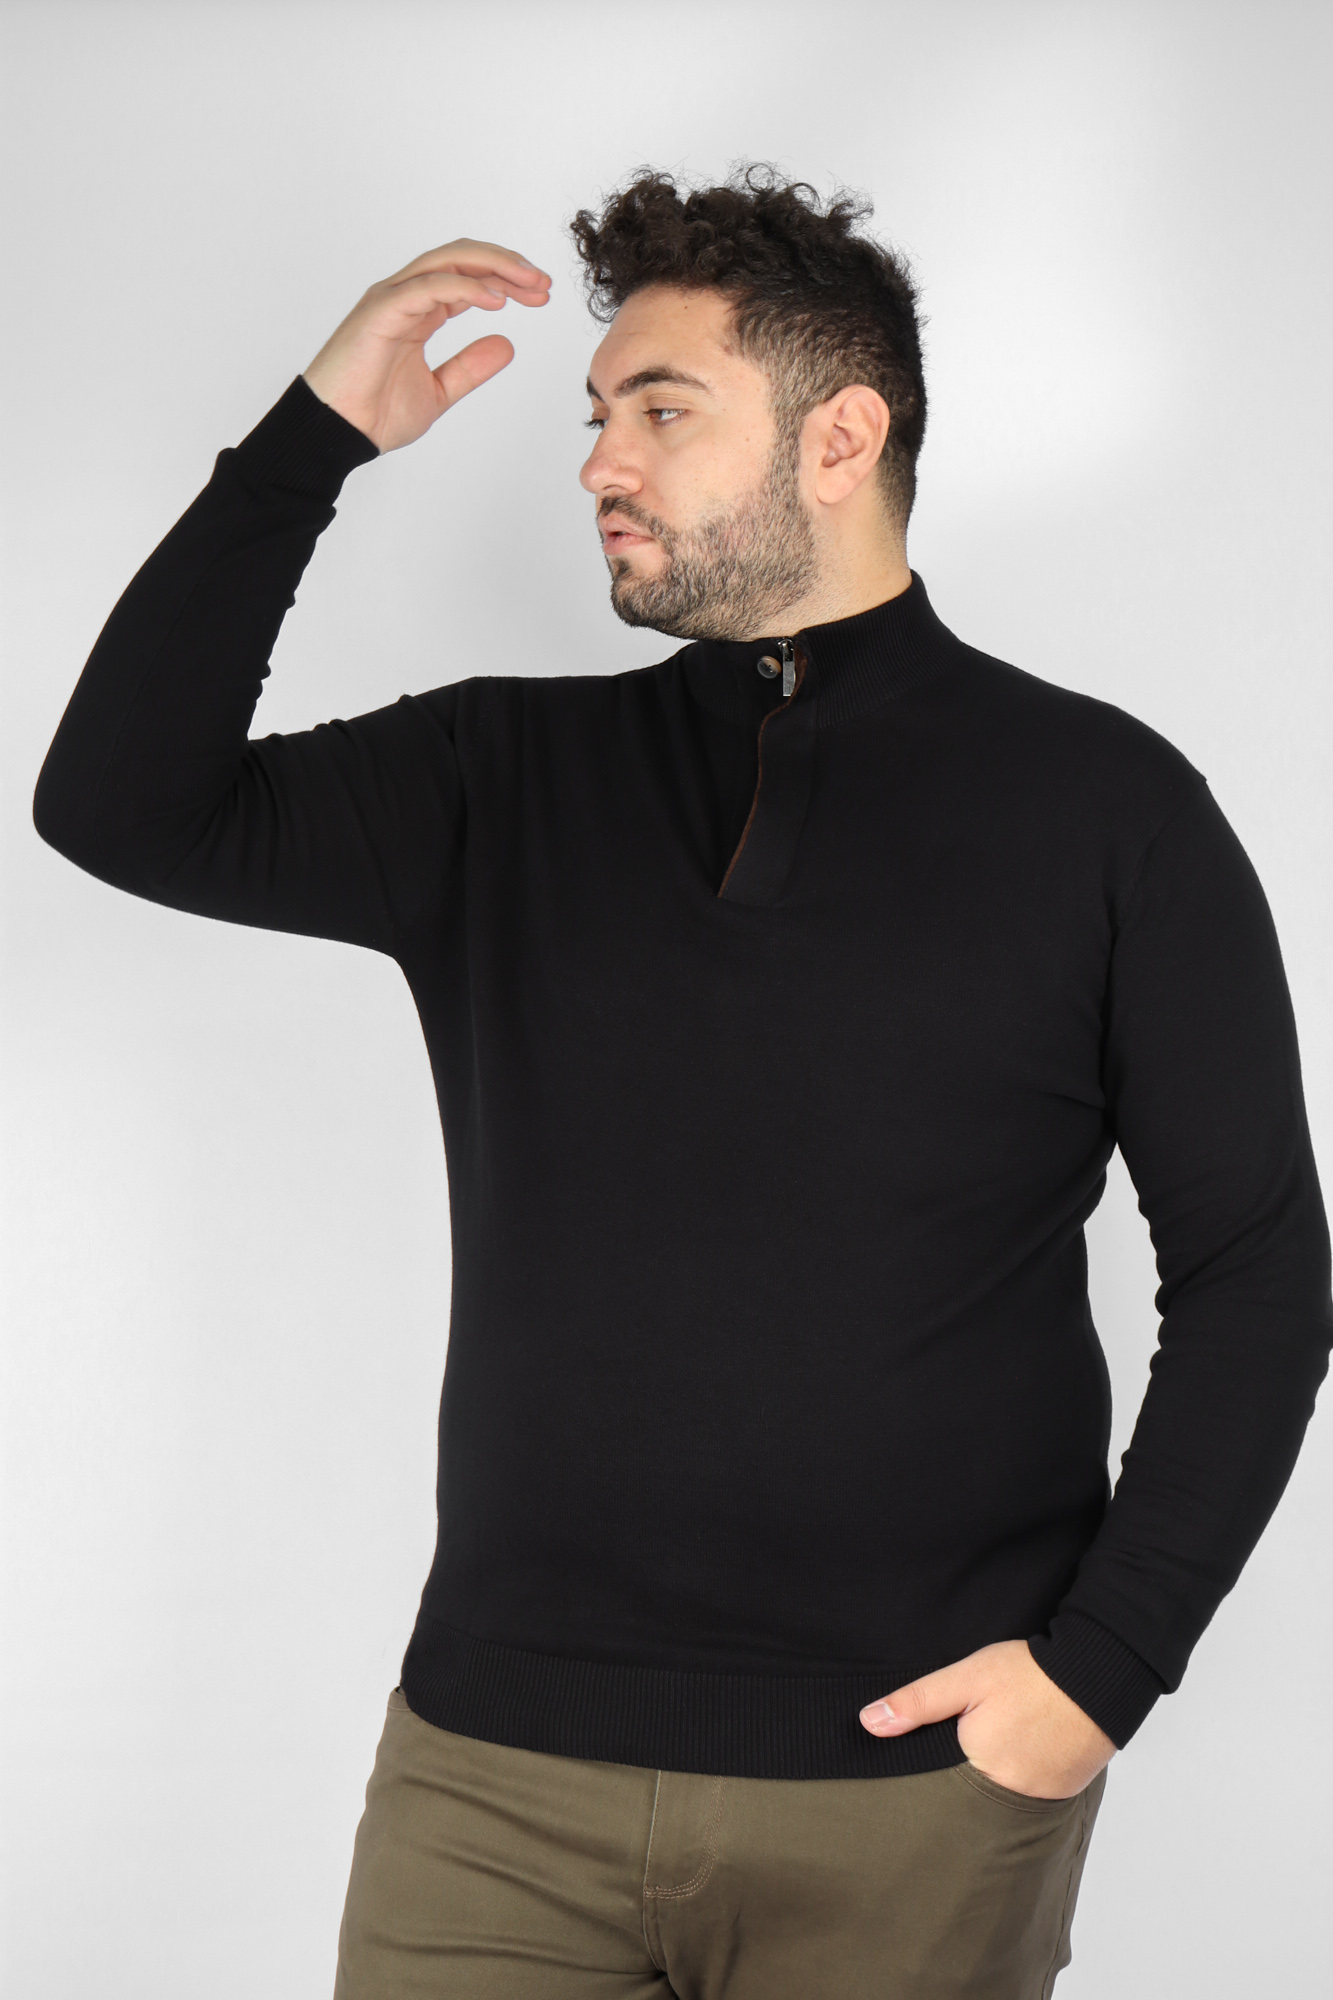 Ανδρική Μπλούζα Πλεκτή Half Zip με Κουμπί Μεγάλα Μεγέθη - Μαύρο